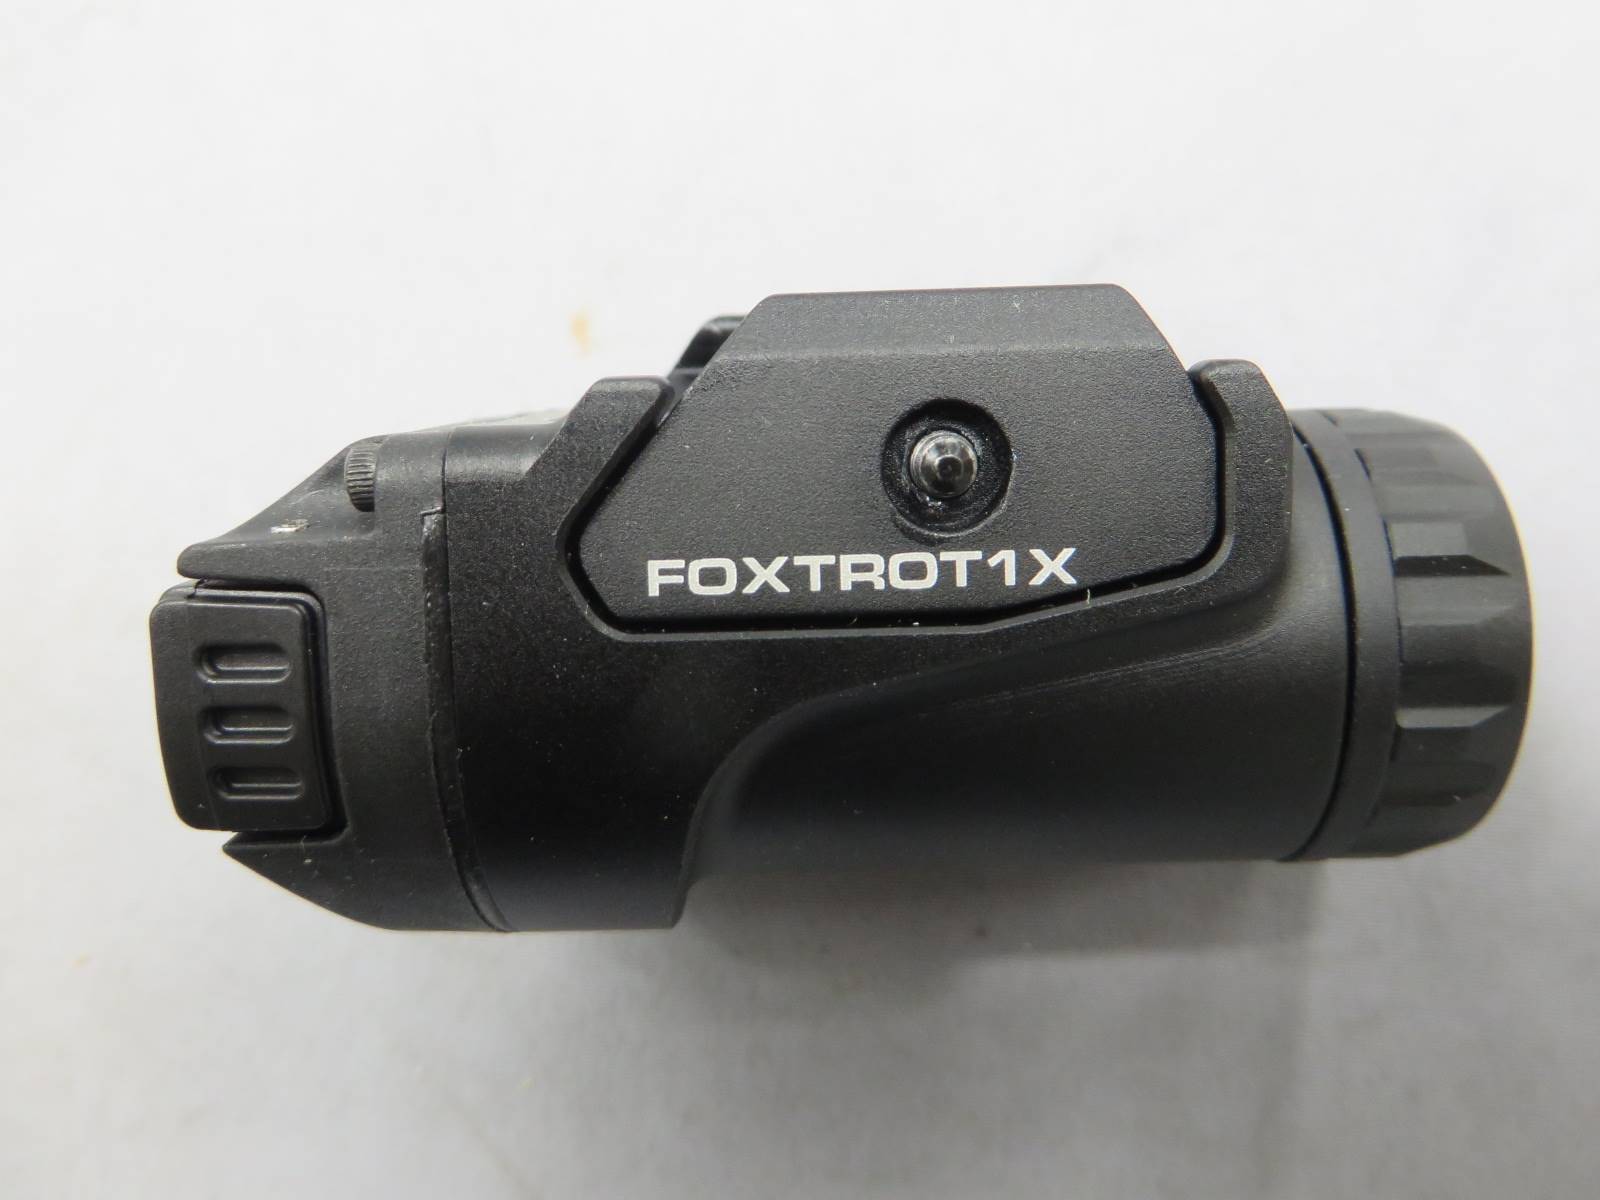 【SIG SAUER】FOXTROT 1X タクティカル ライト